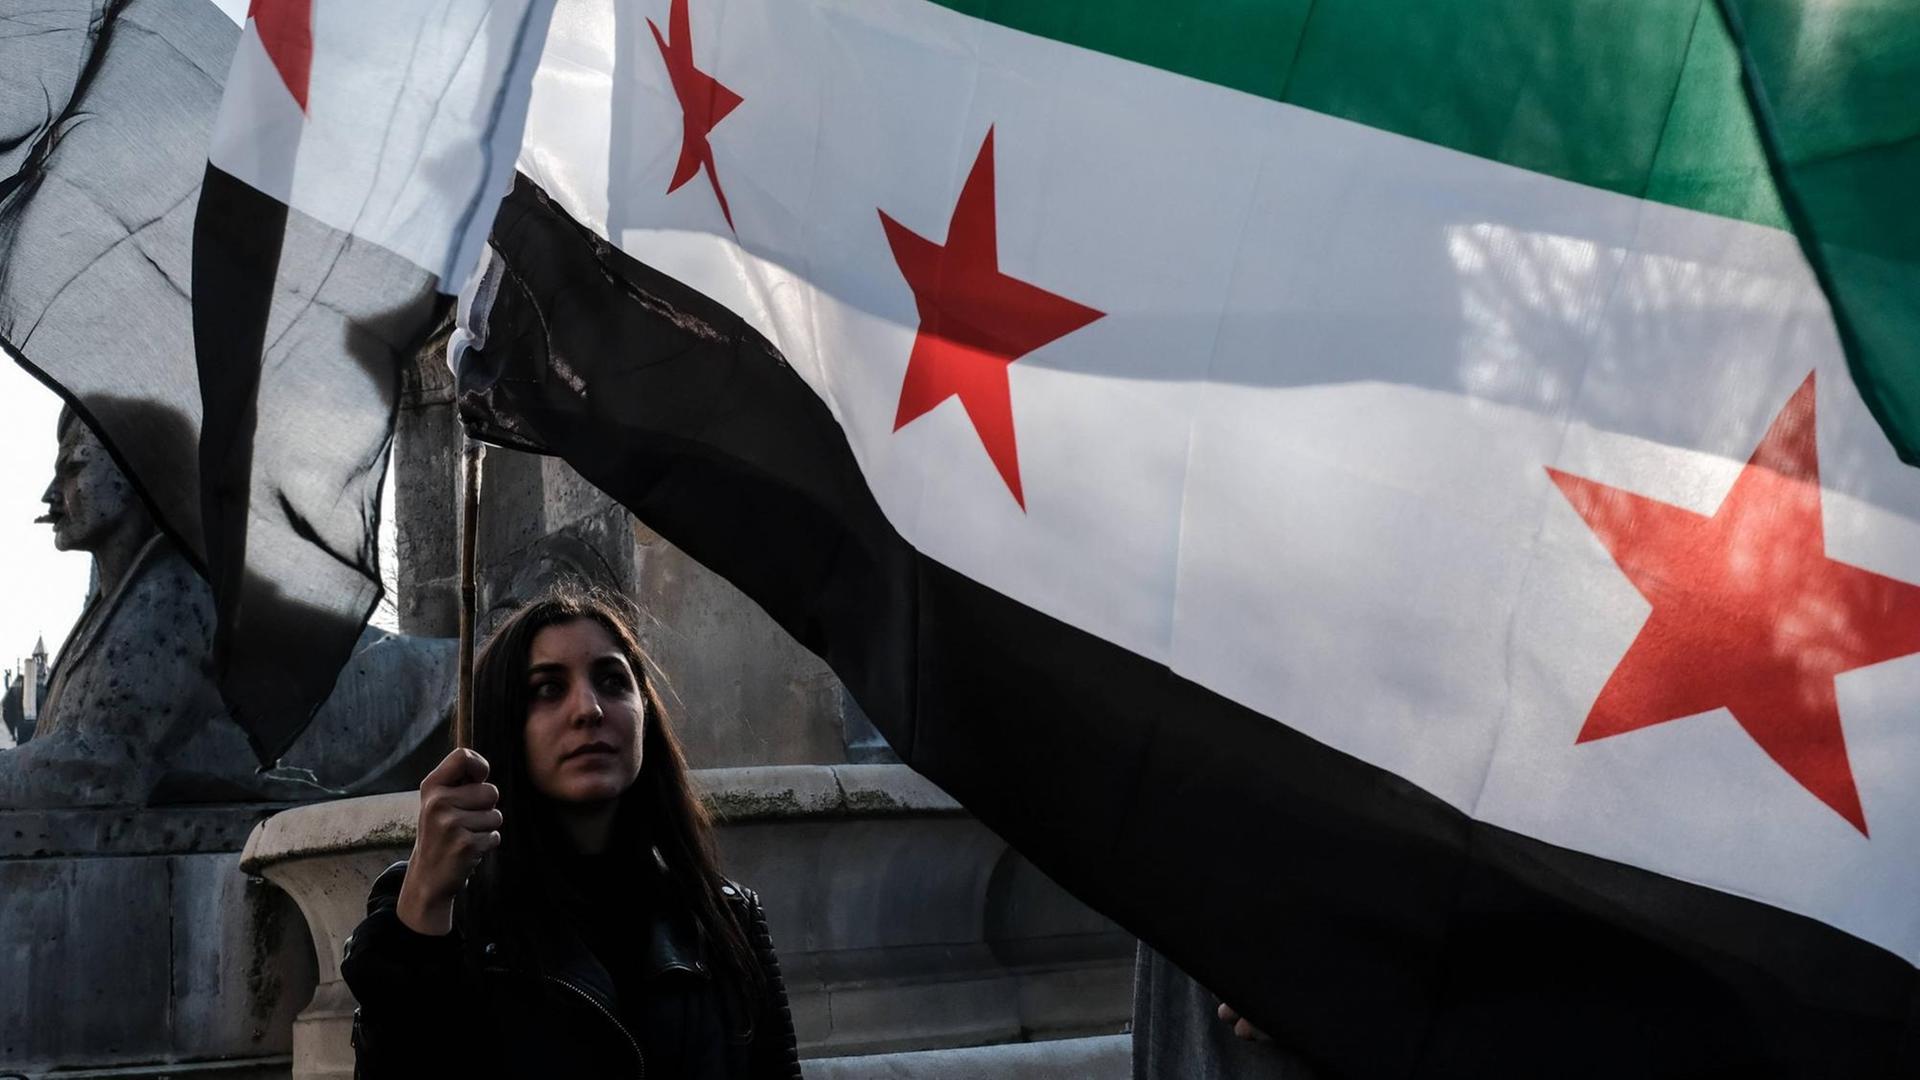 In Frankreich protestieren Aktivisten gegen die Bombardierungen in Syrien: Aufnahme vom 11. April 2018. Eine junge Frau hält eine syrische Flagge hoch.